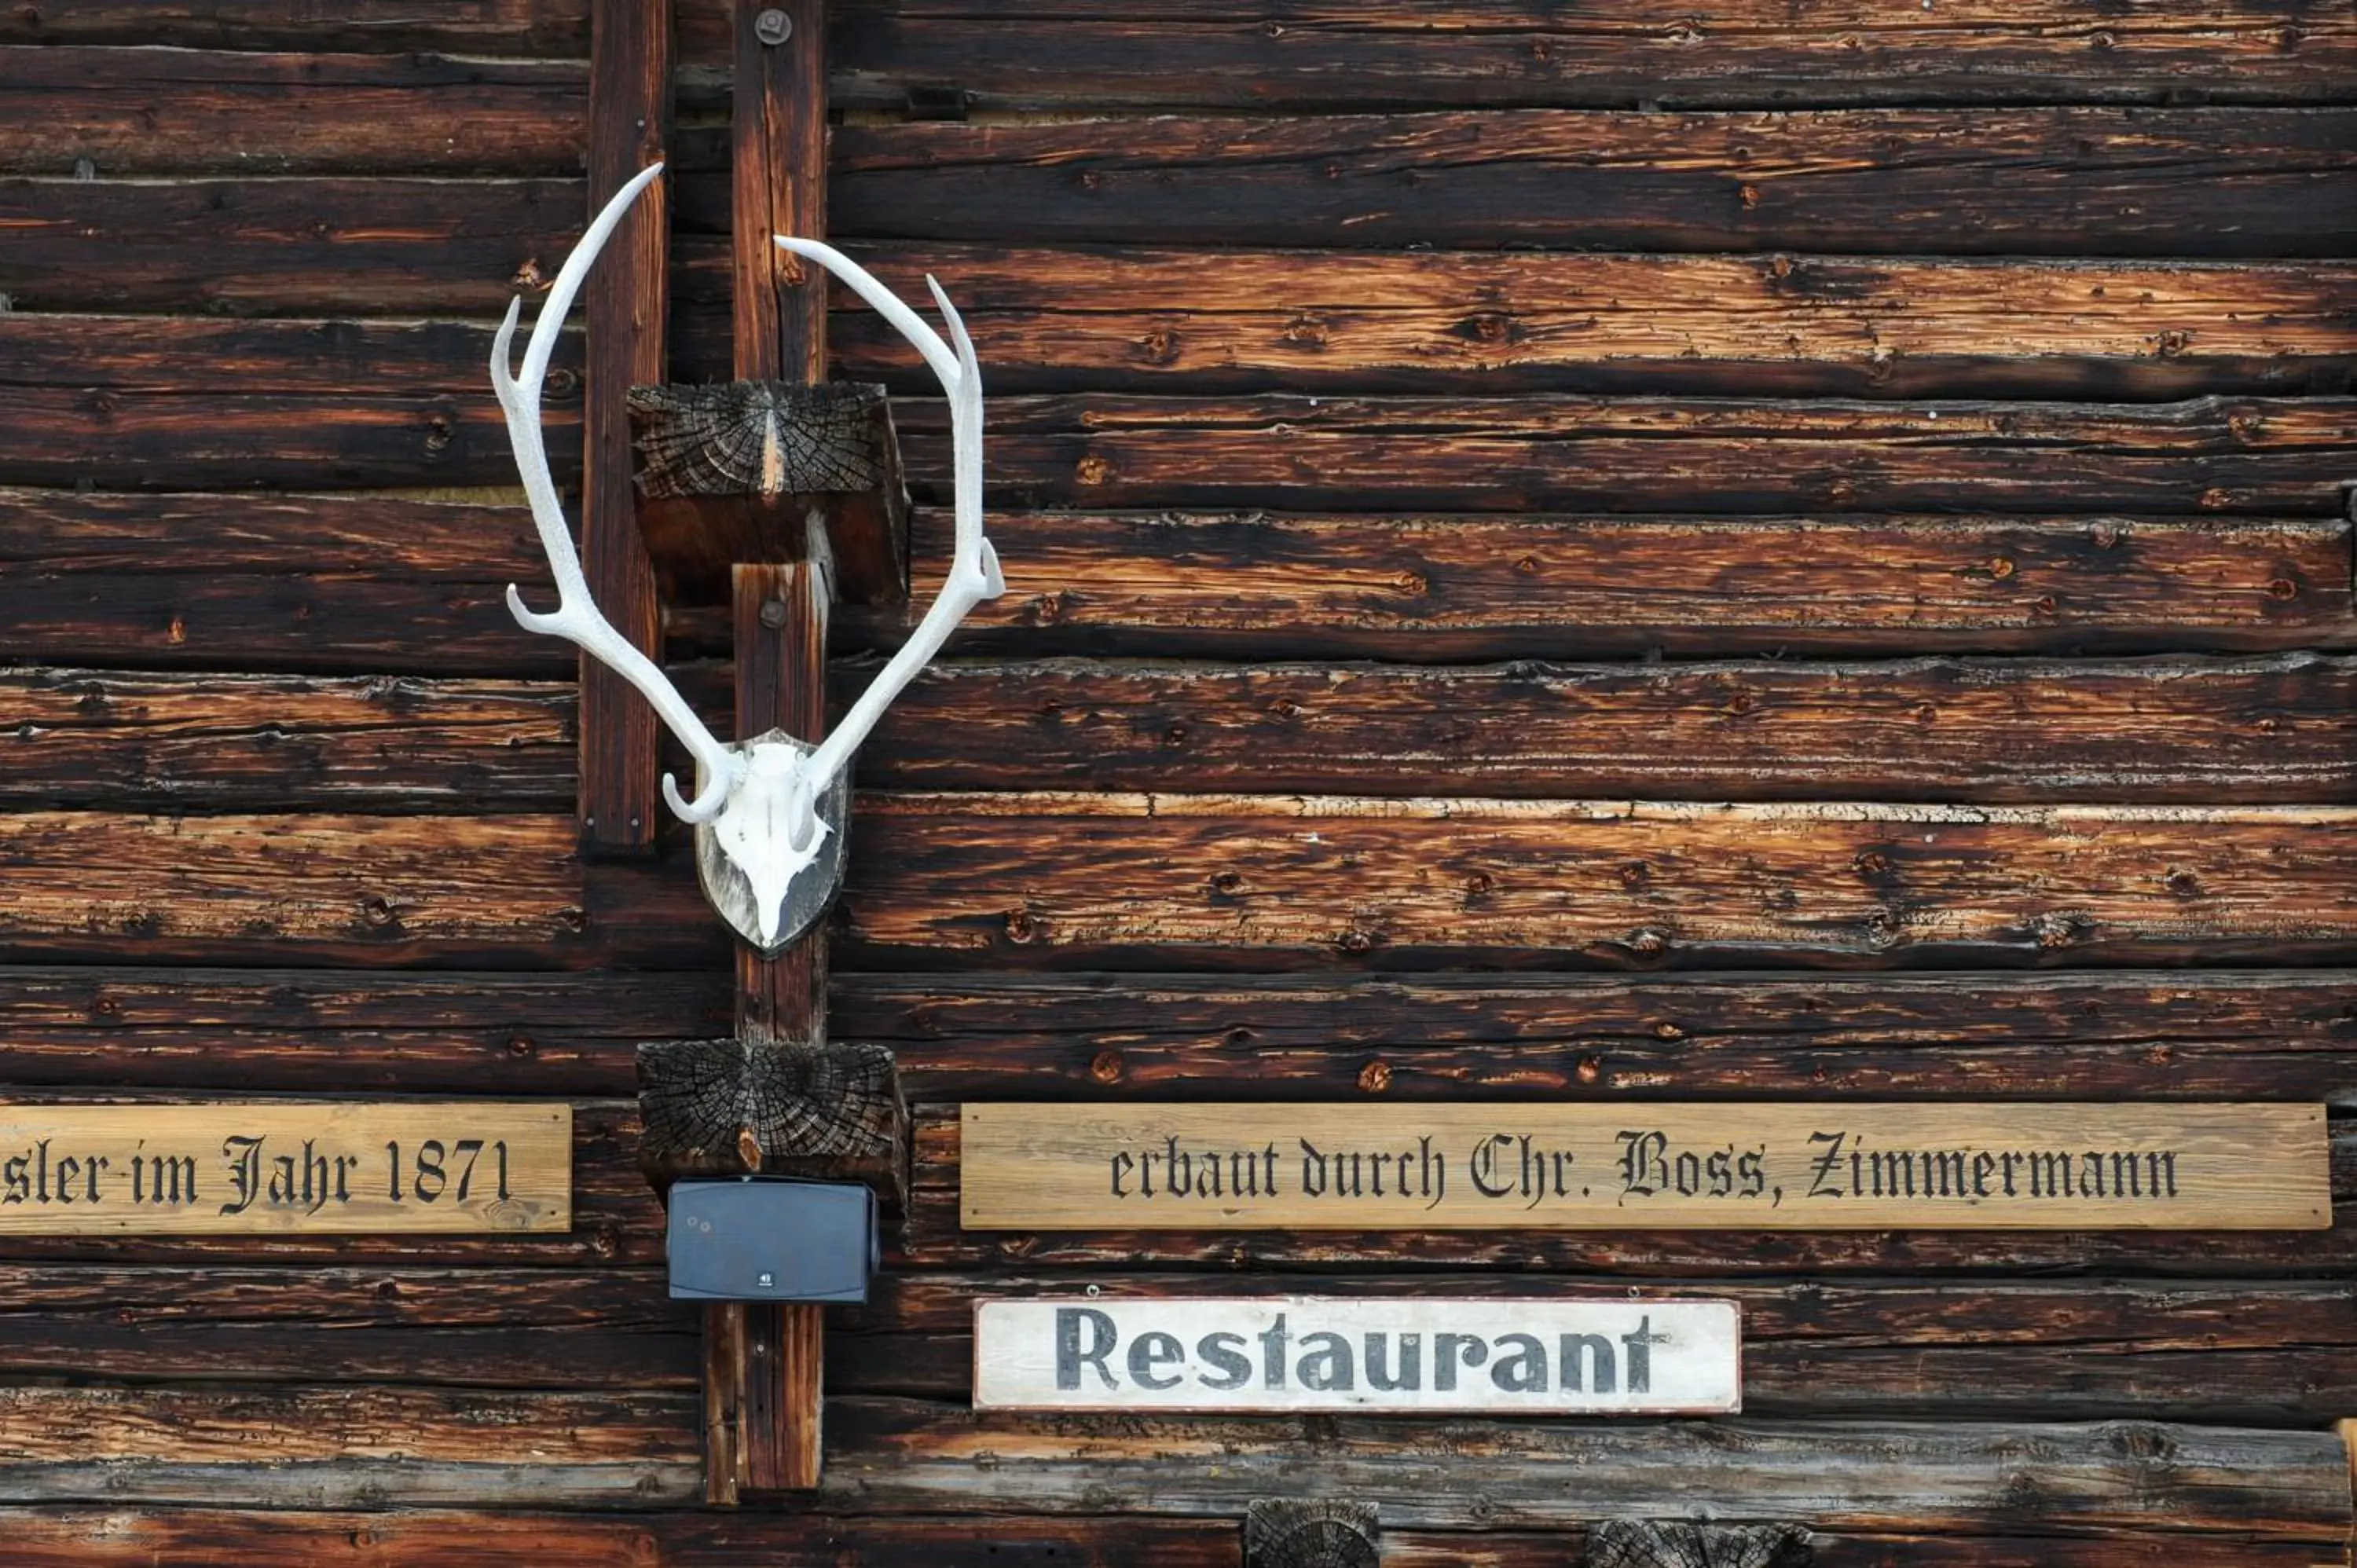 Restaurant/places to eat in Alpinhotel Bort